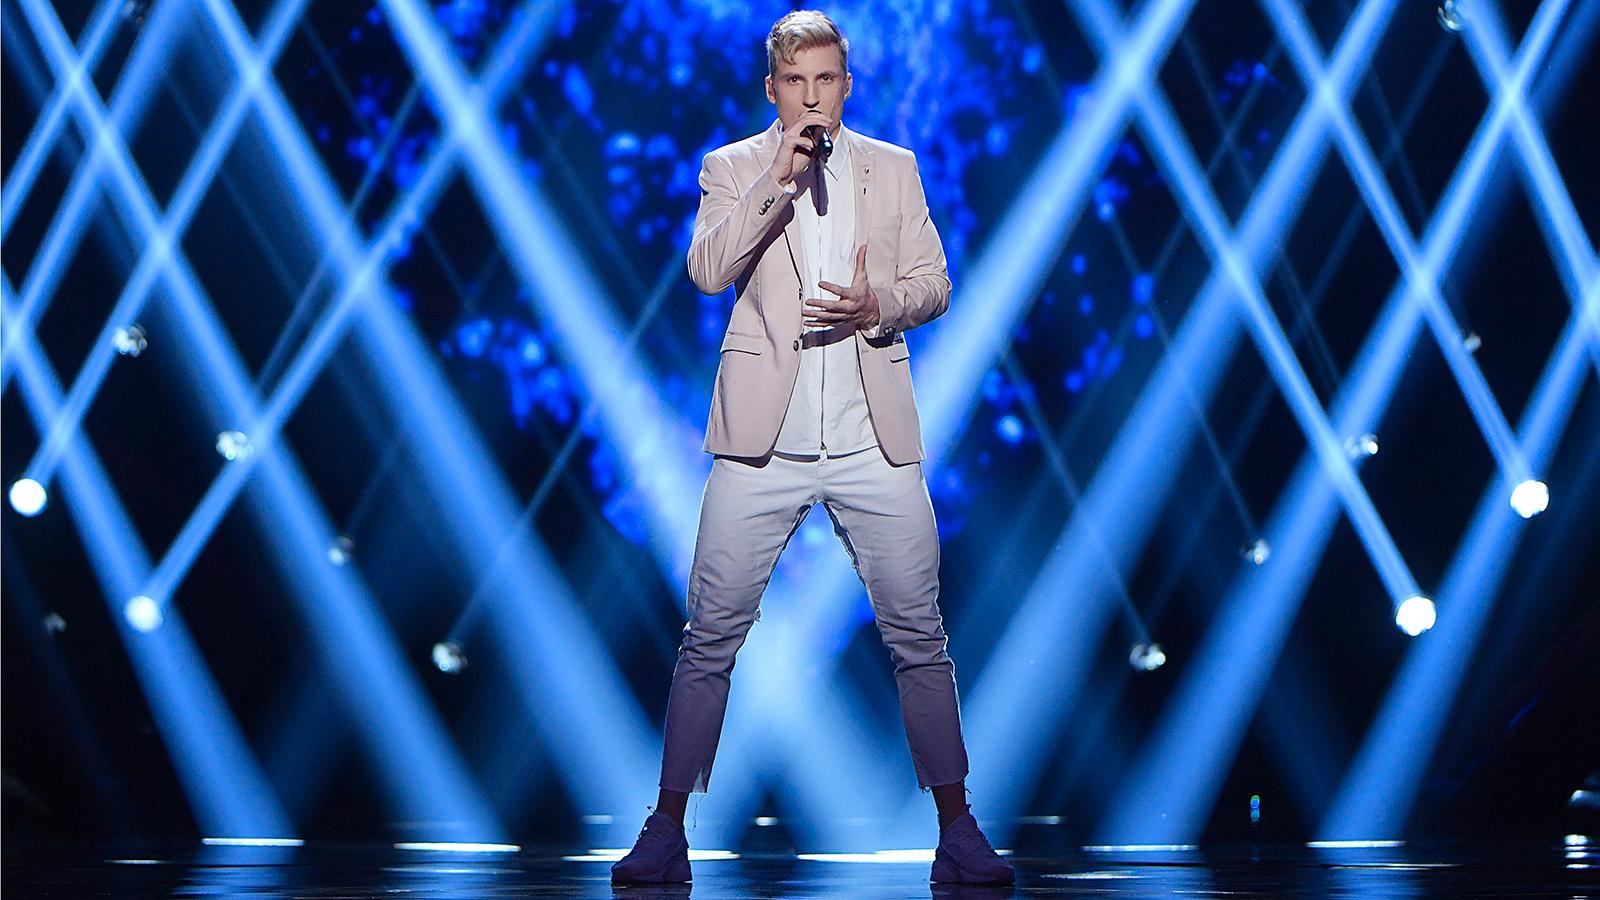 Axel Schyllström nådde Andra chansen i Melodifestivalen 2017 med låten “När ingen ser“.